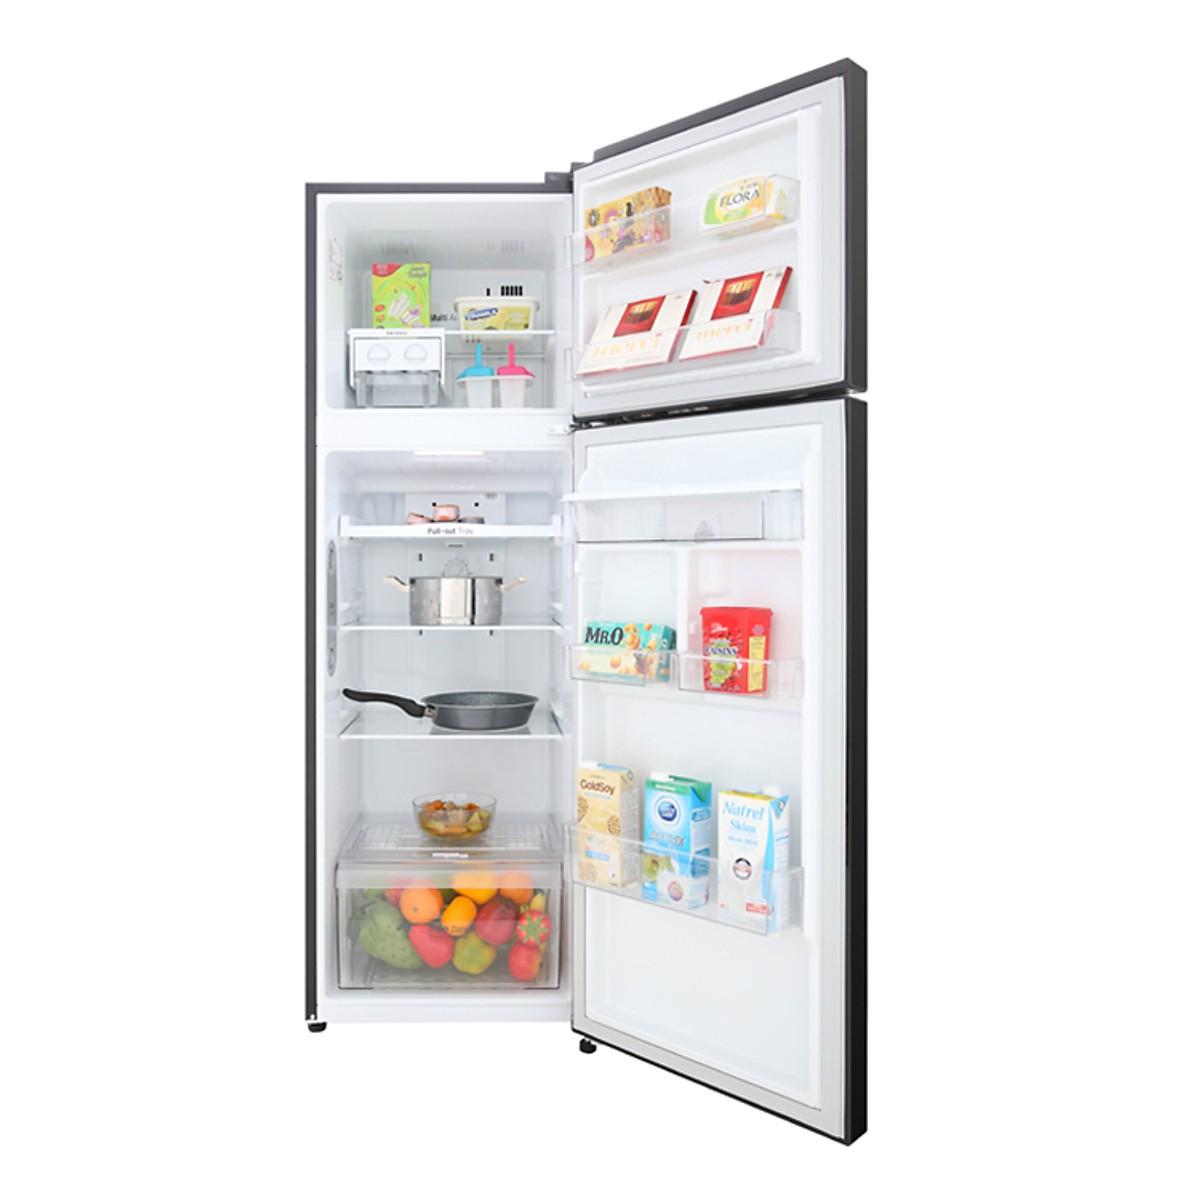 [Trả góp 0%]Tủ lạnh LG GN-D255BL 255 lít Inverter